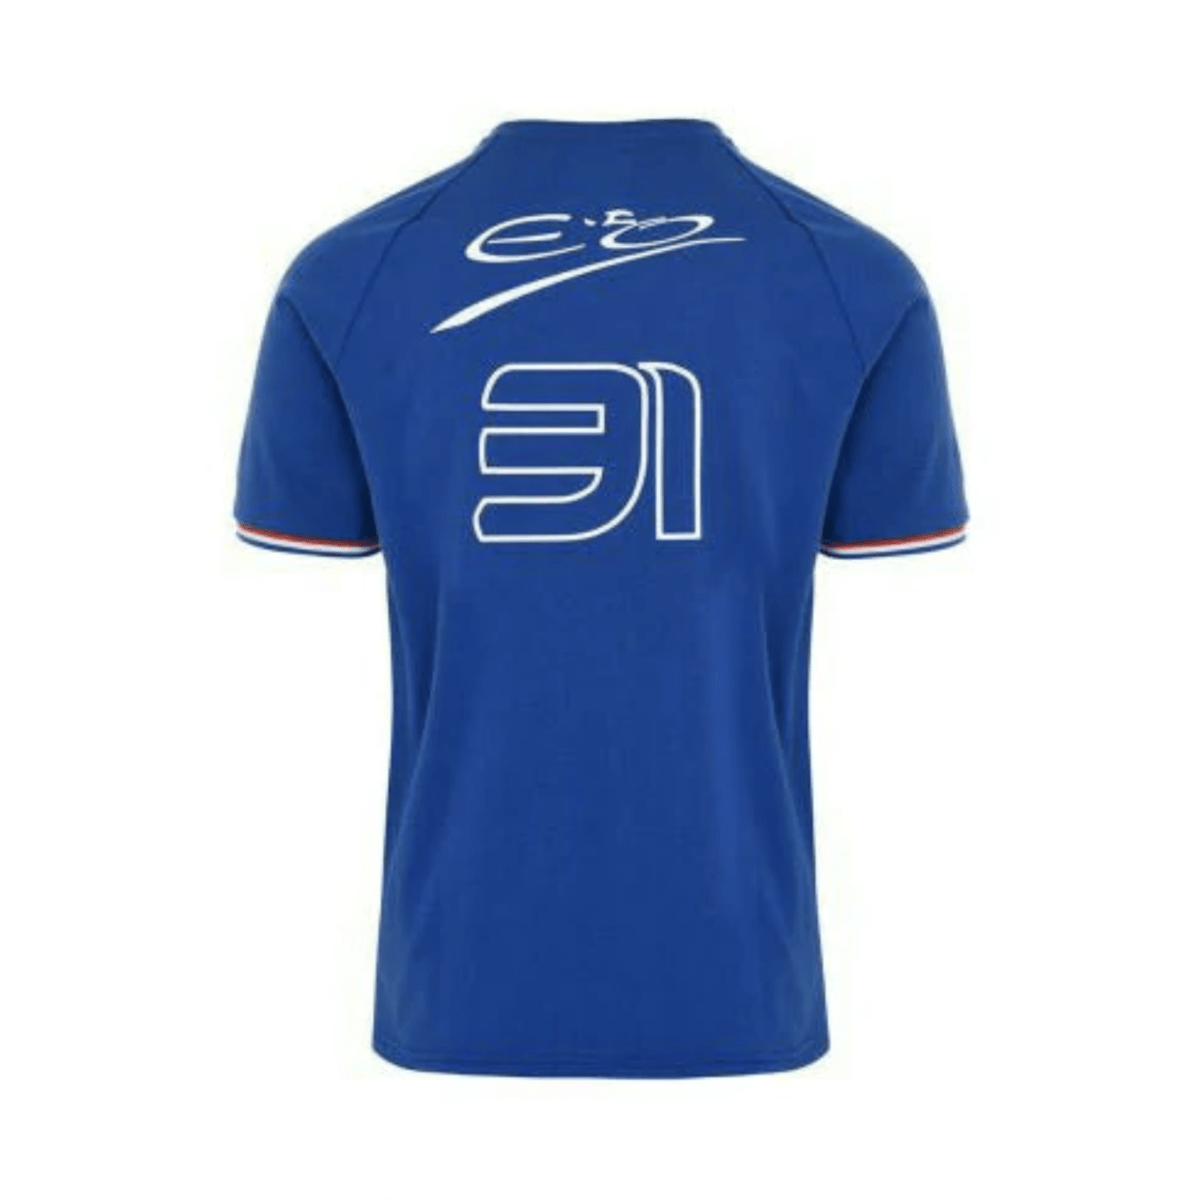 Camiseta Edición Limitada Monza del equipo 2023 - SALASMotorsport